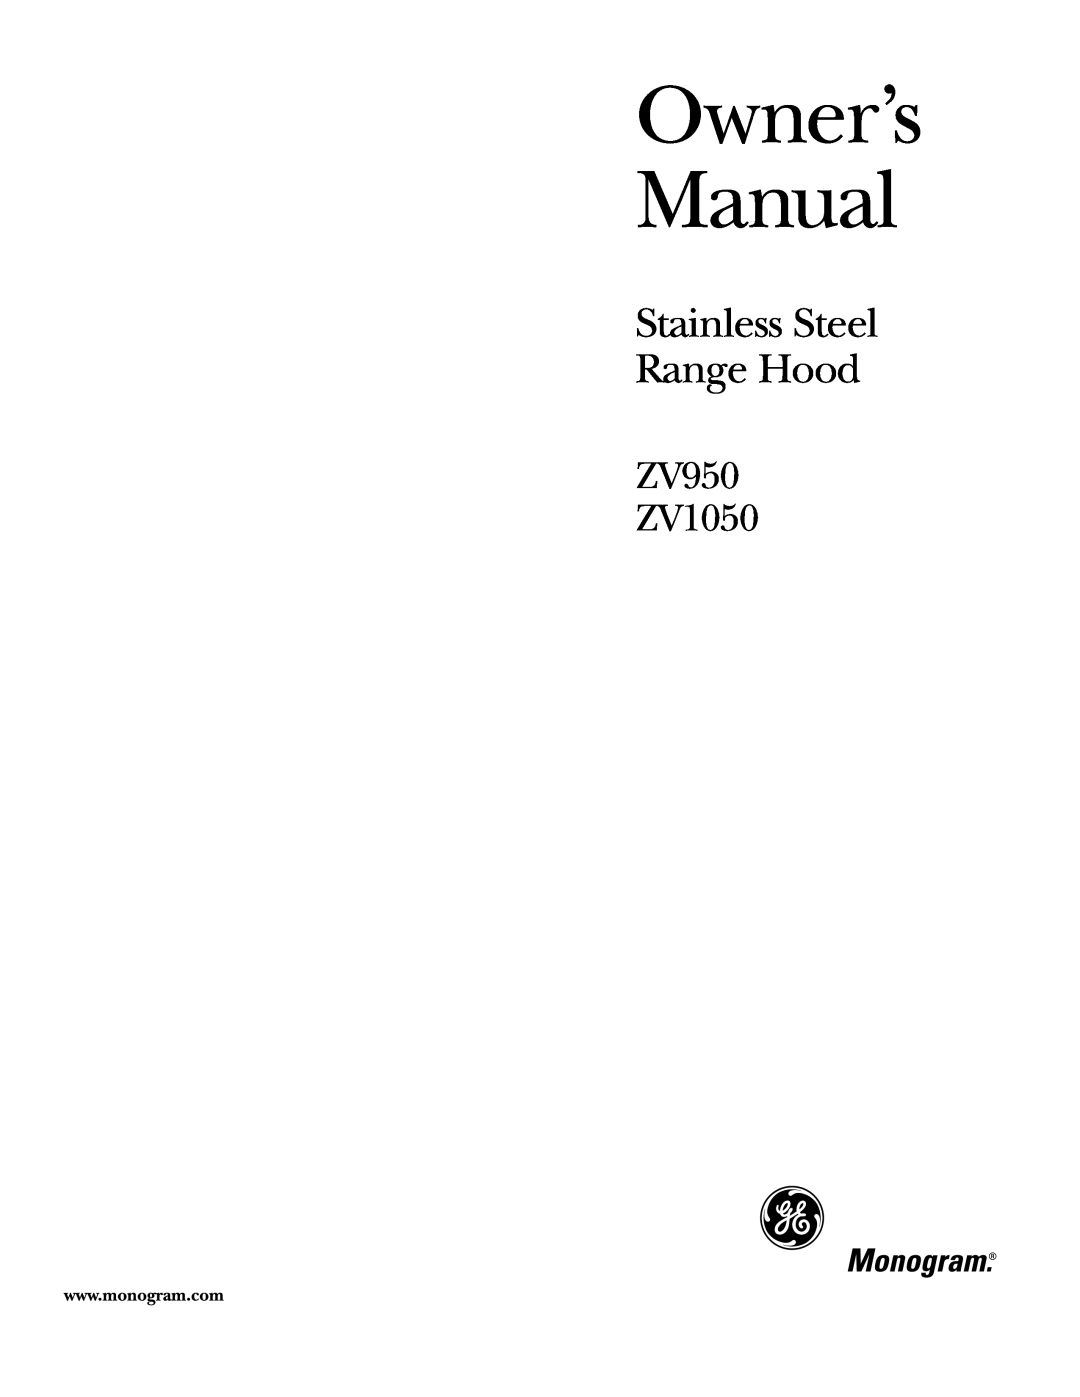 GE owner manual ZV950 ZV1050, Stainless Steel Range Hood, 01-13GE 